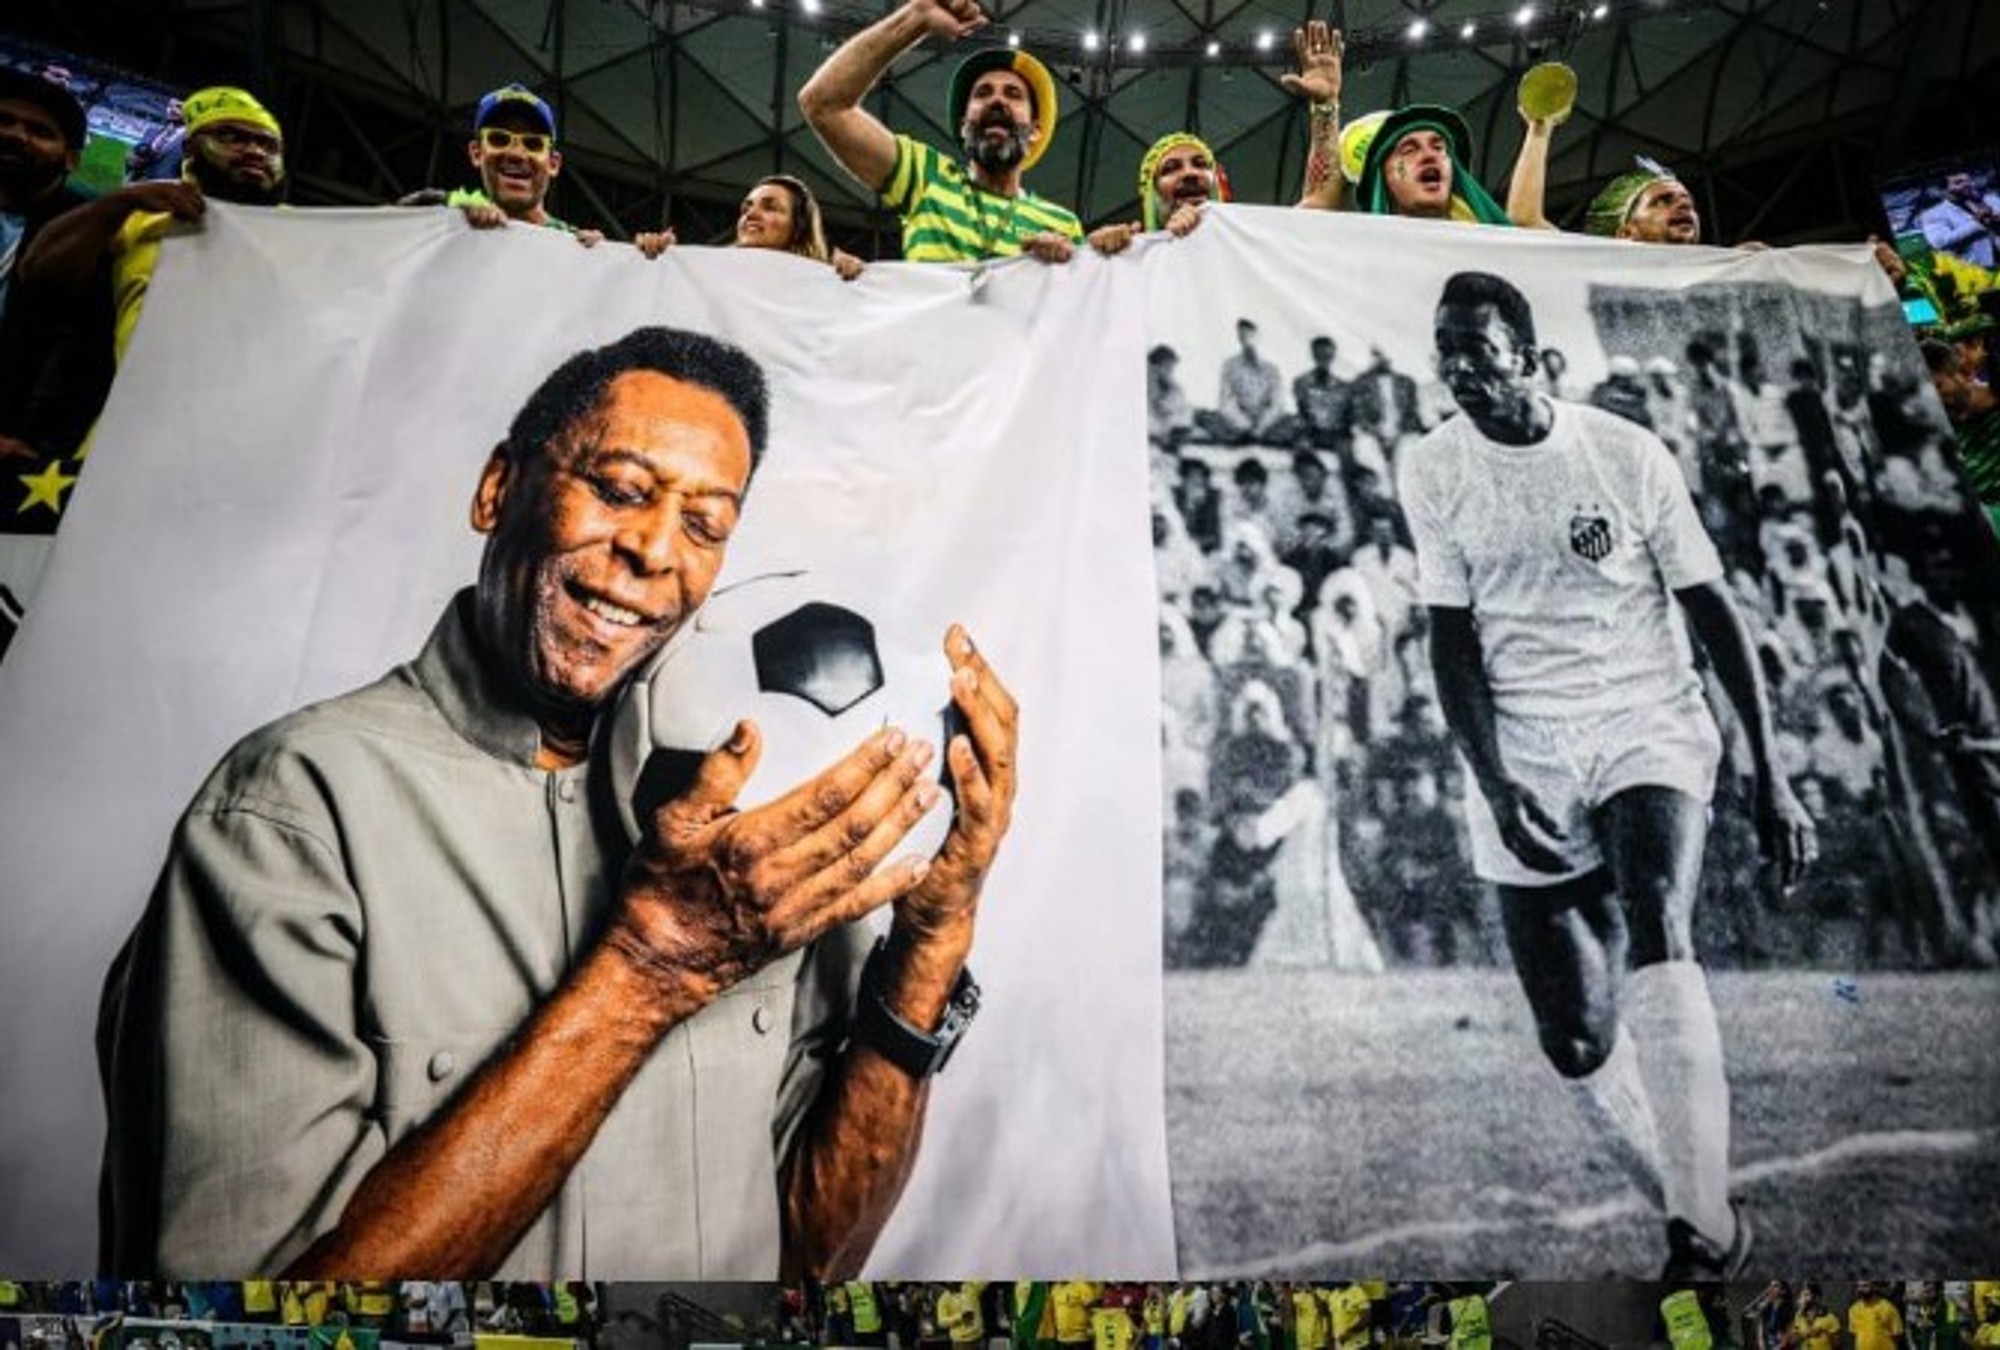 Los fans desearon a Pelé una pronta recuperación desde Qatar.